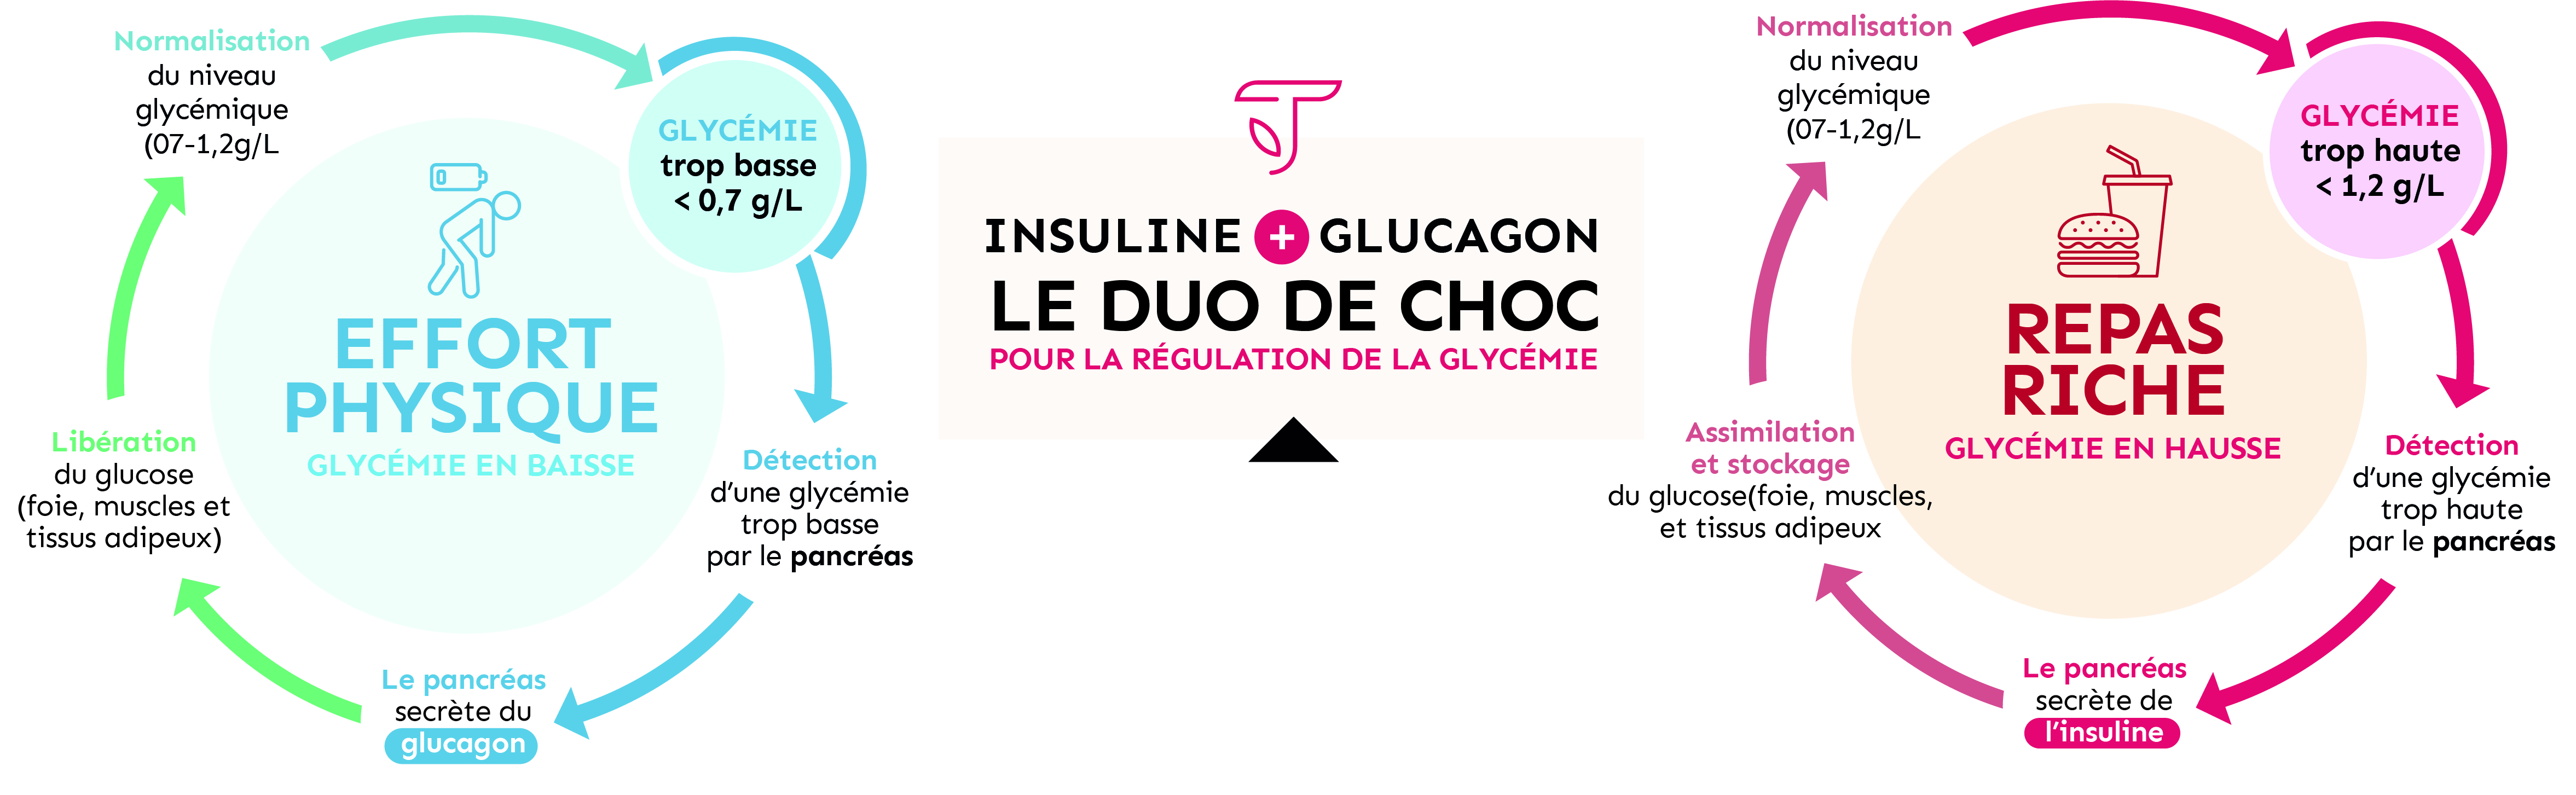 Insuline + glucagon, le duo de choc pour la régulation de la glycémie